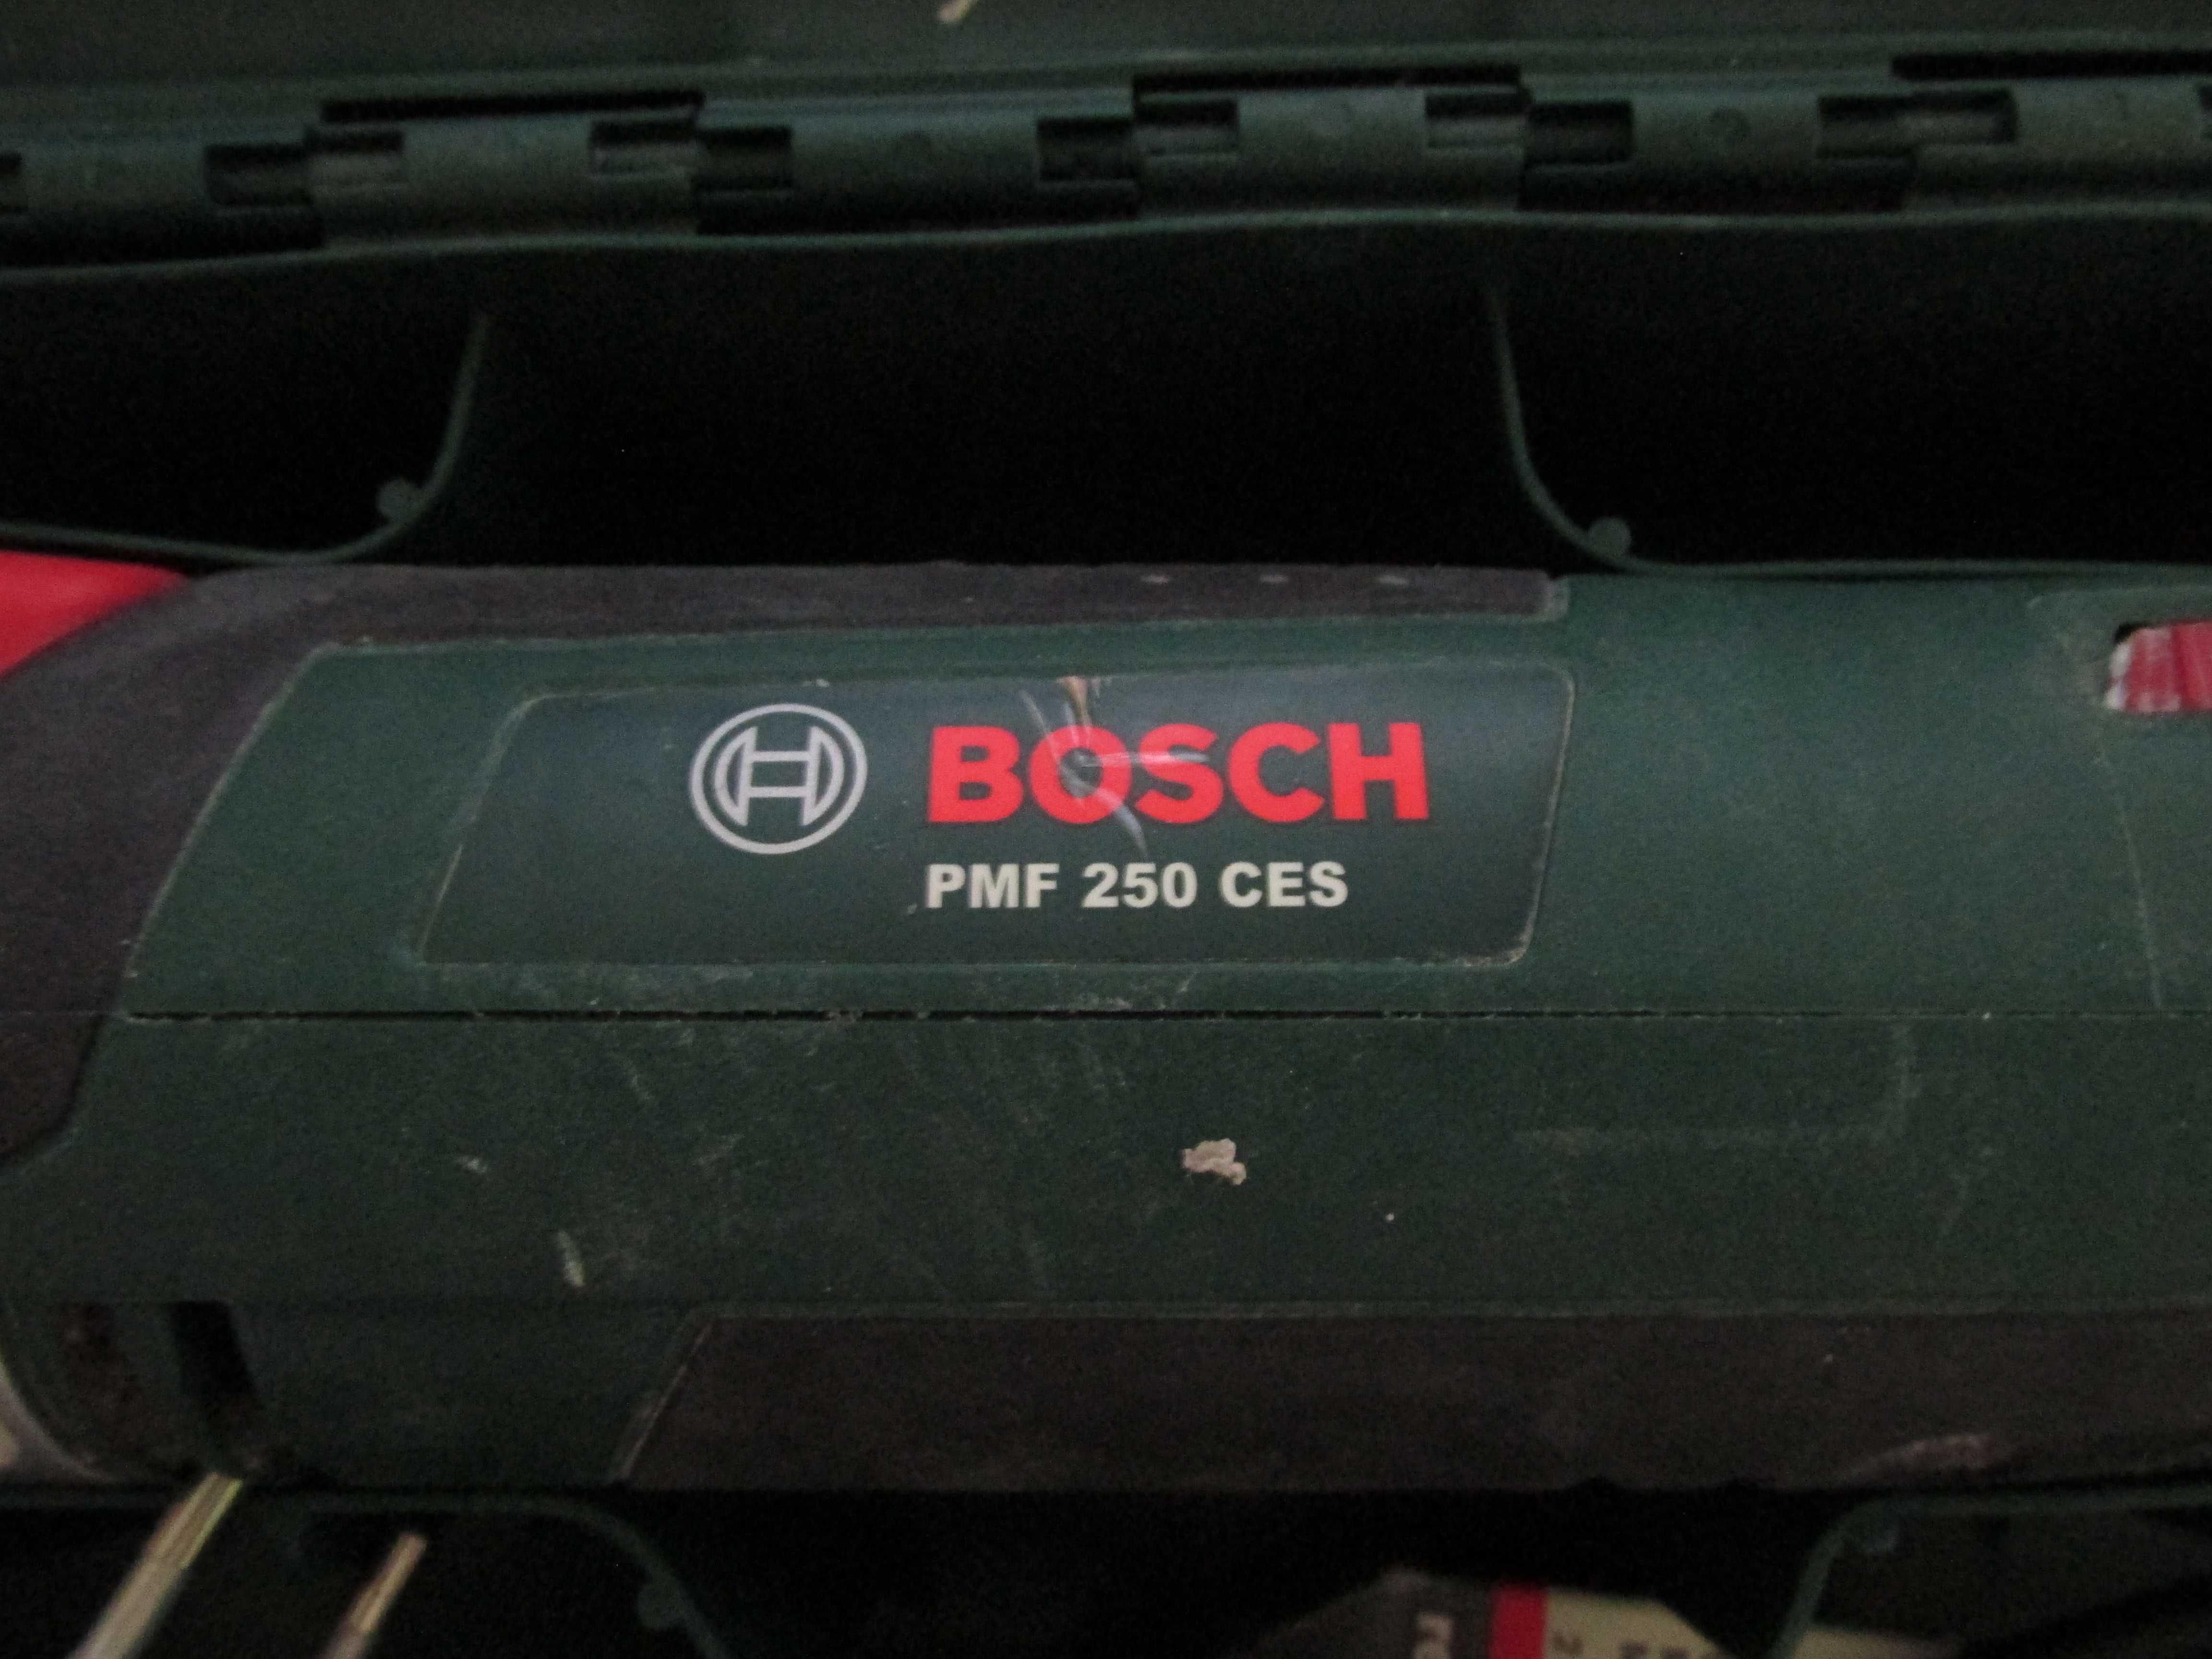 Мультитул реноватор универсальный резак Bosch PMF 250 CES с кейсом